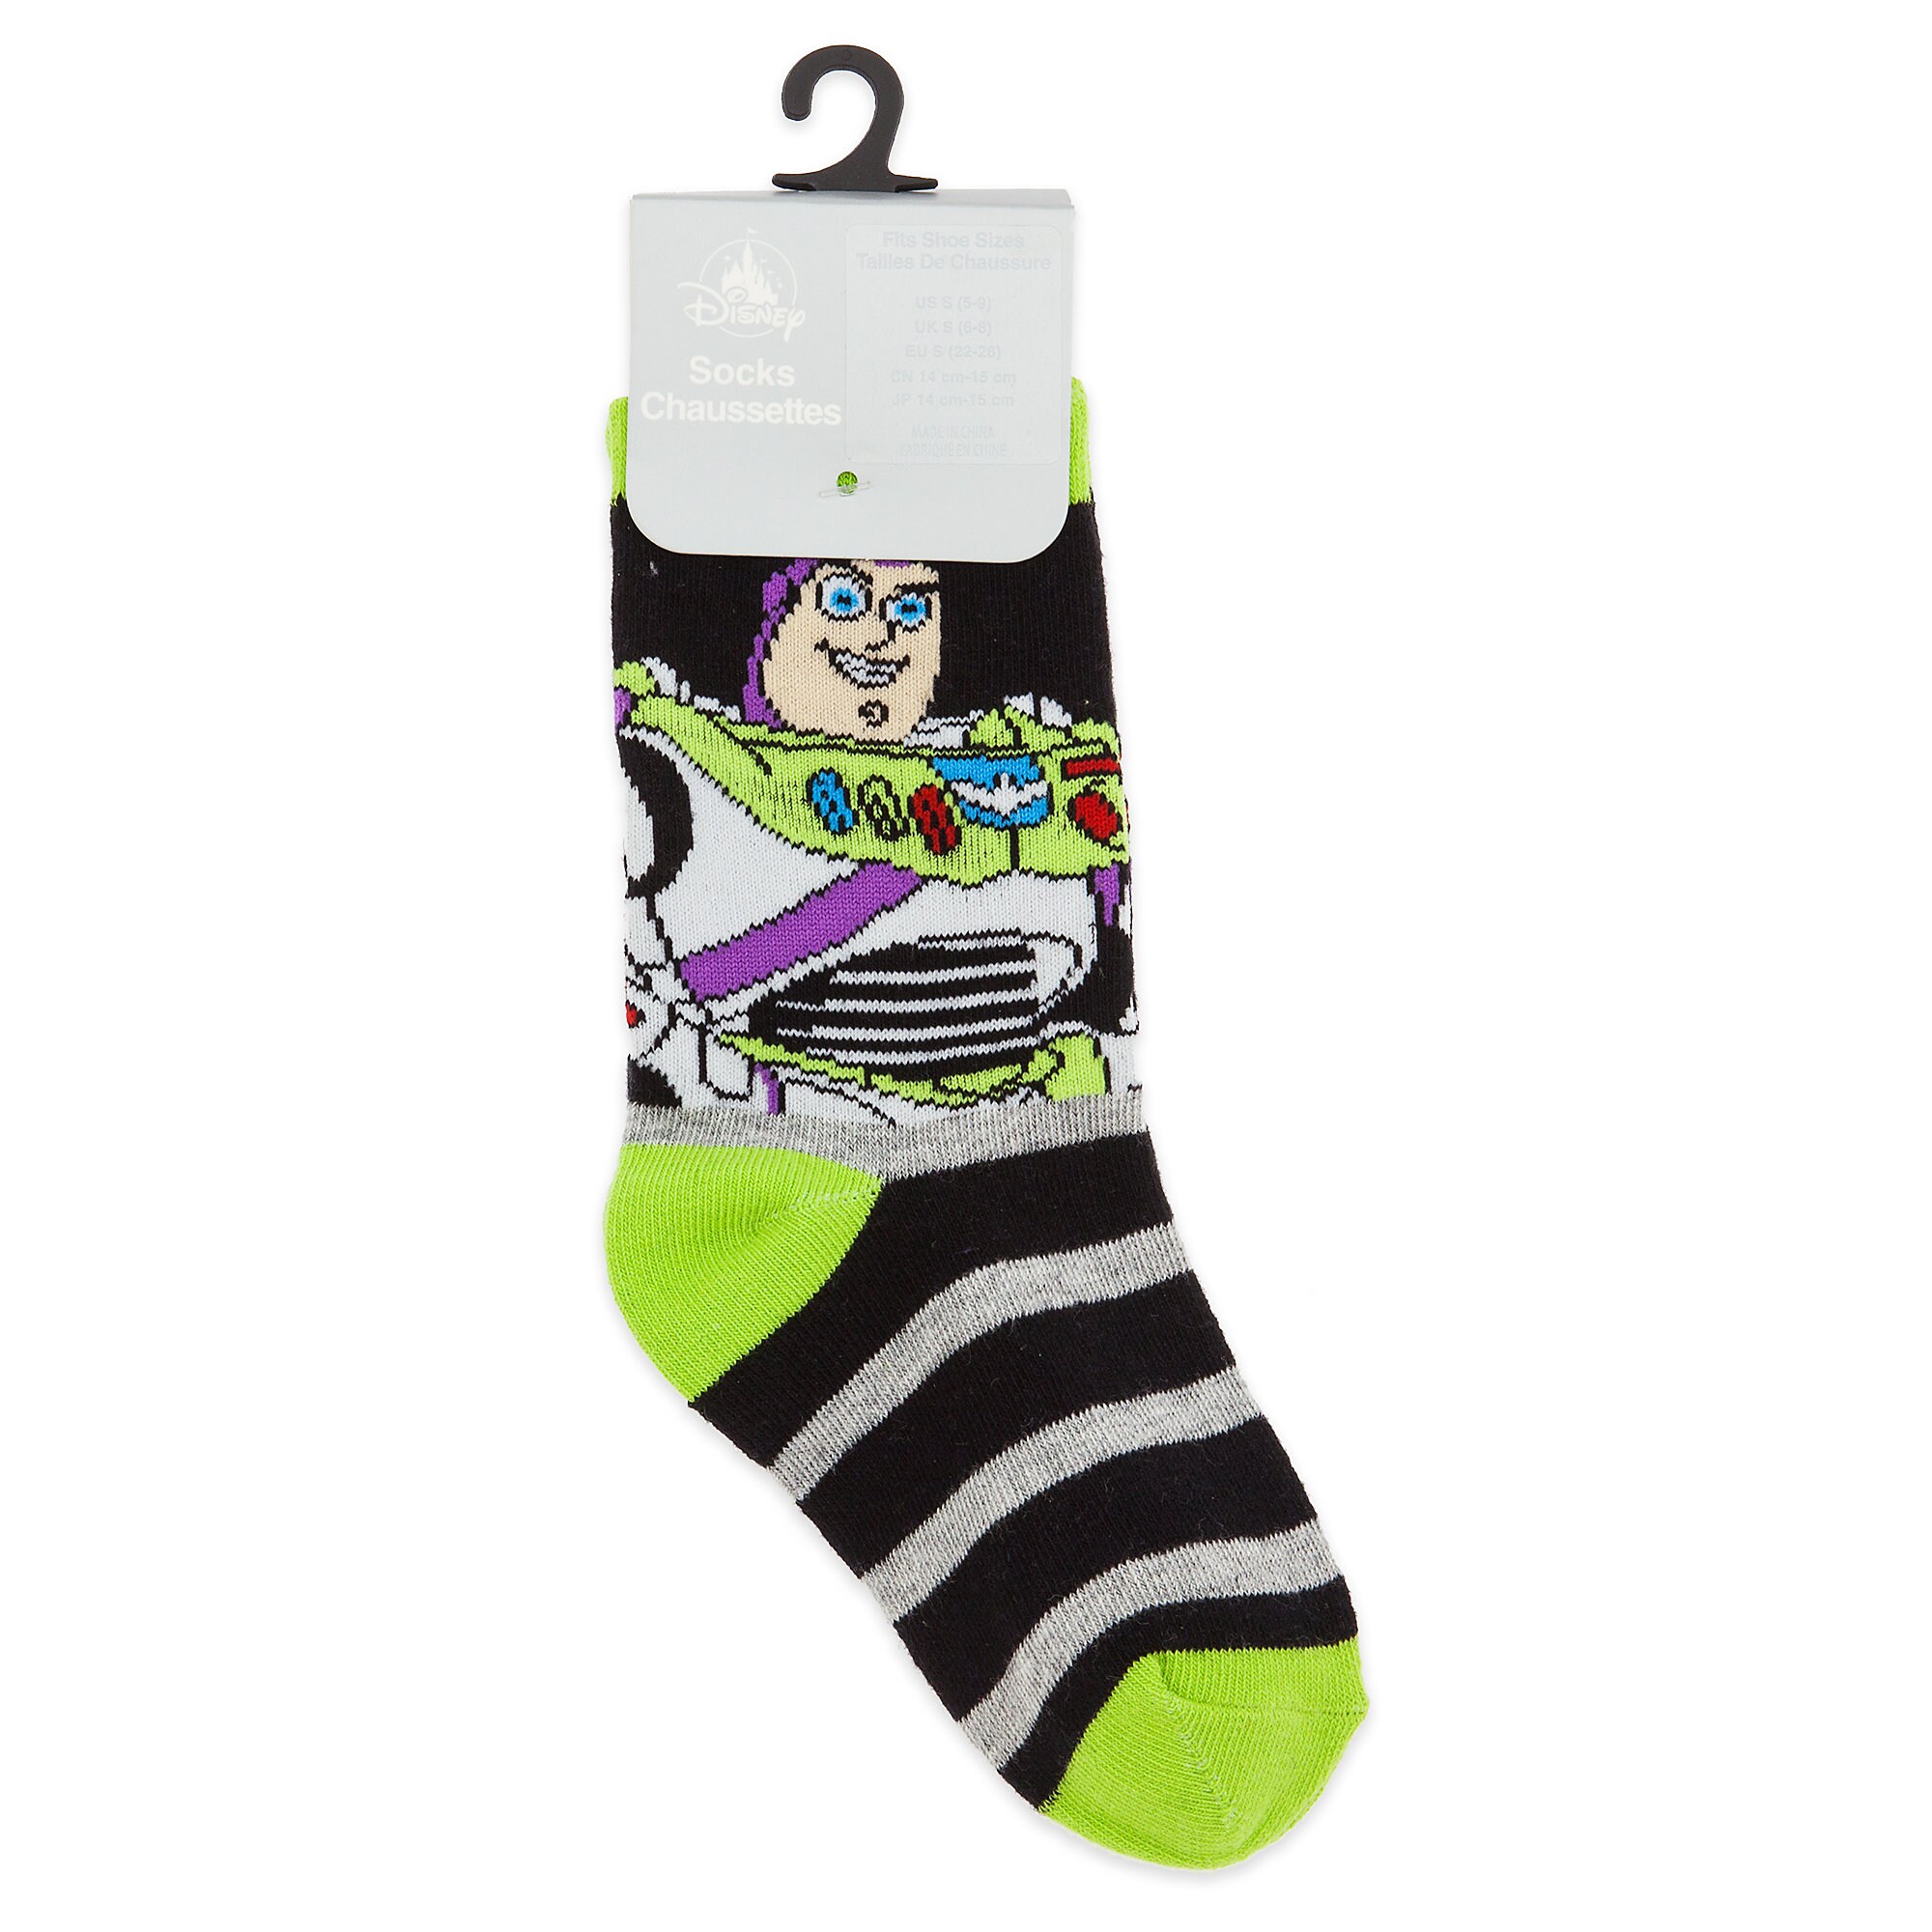 Buzz Lightyear Crew Socks for Boys